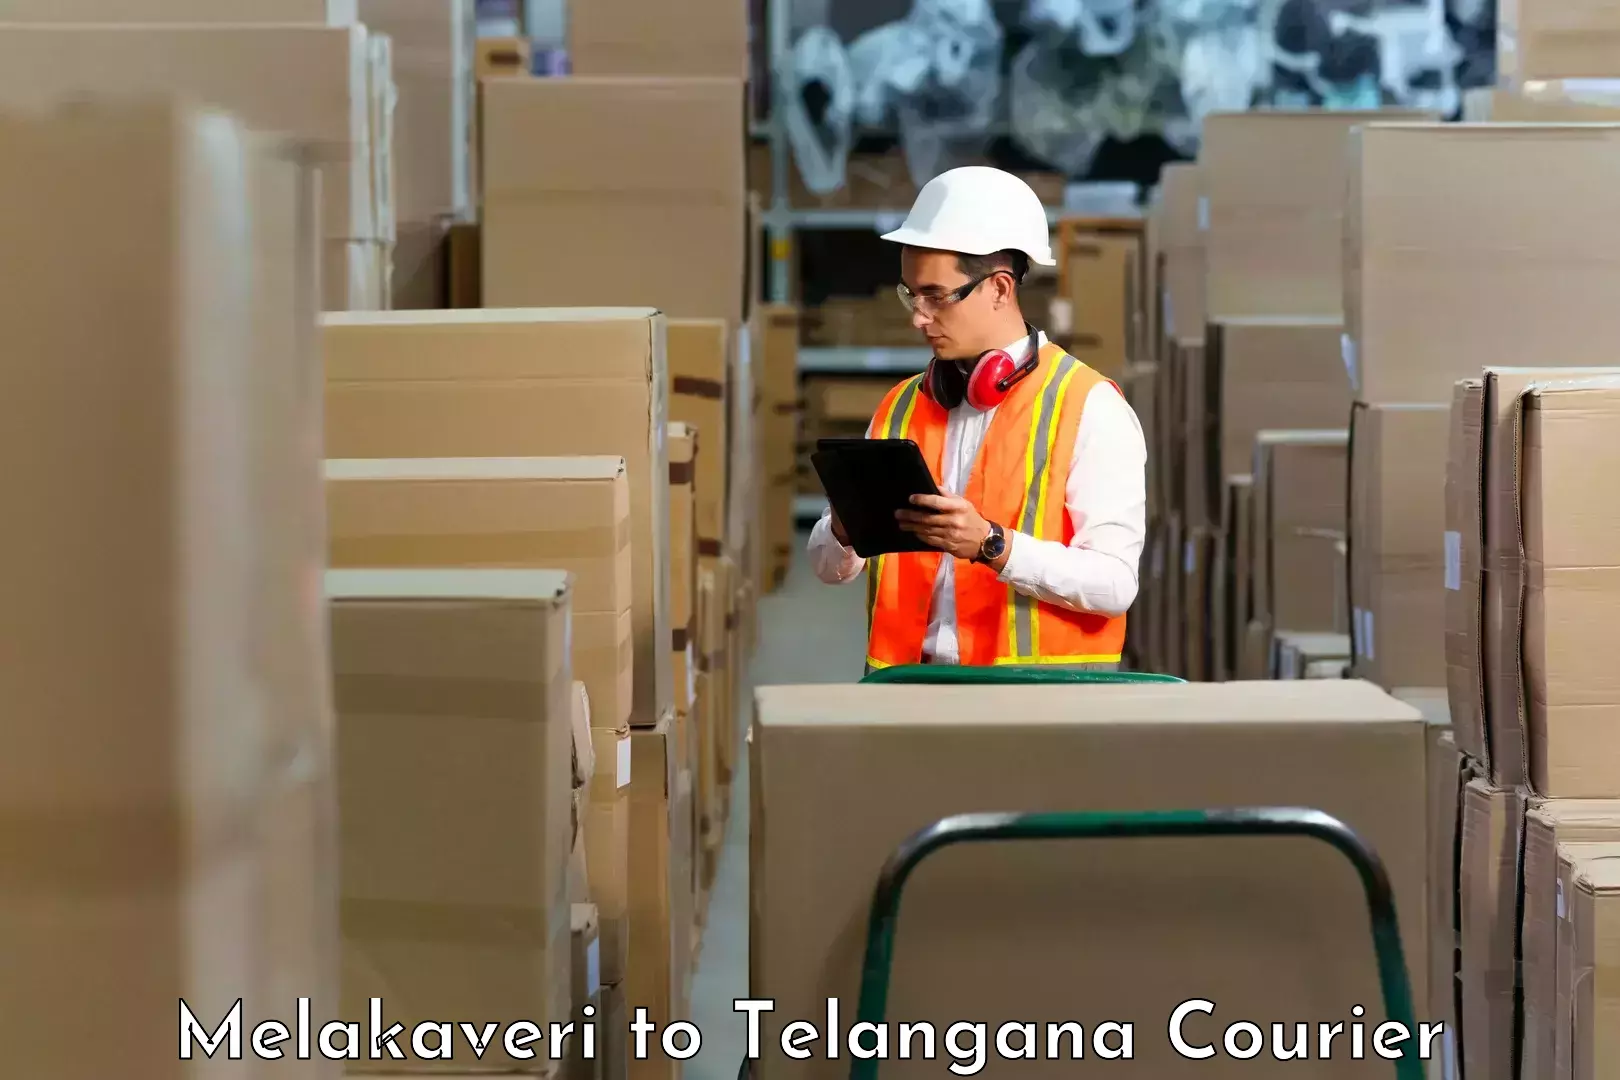 Reliable parcel services Melakaveri to Pregnapur